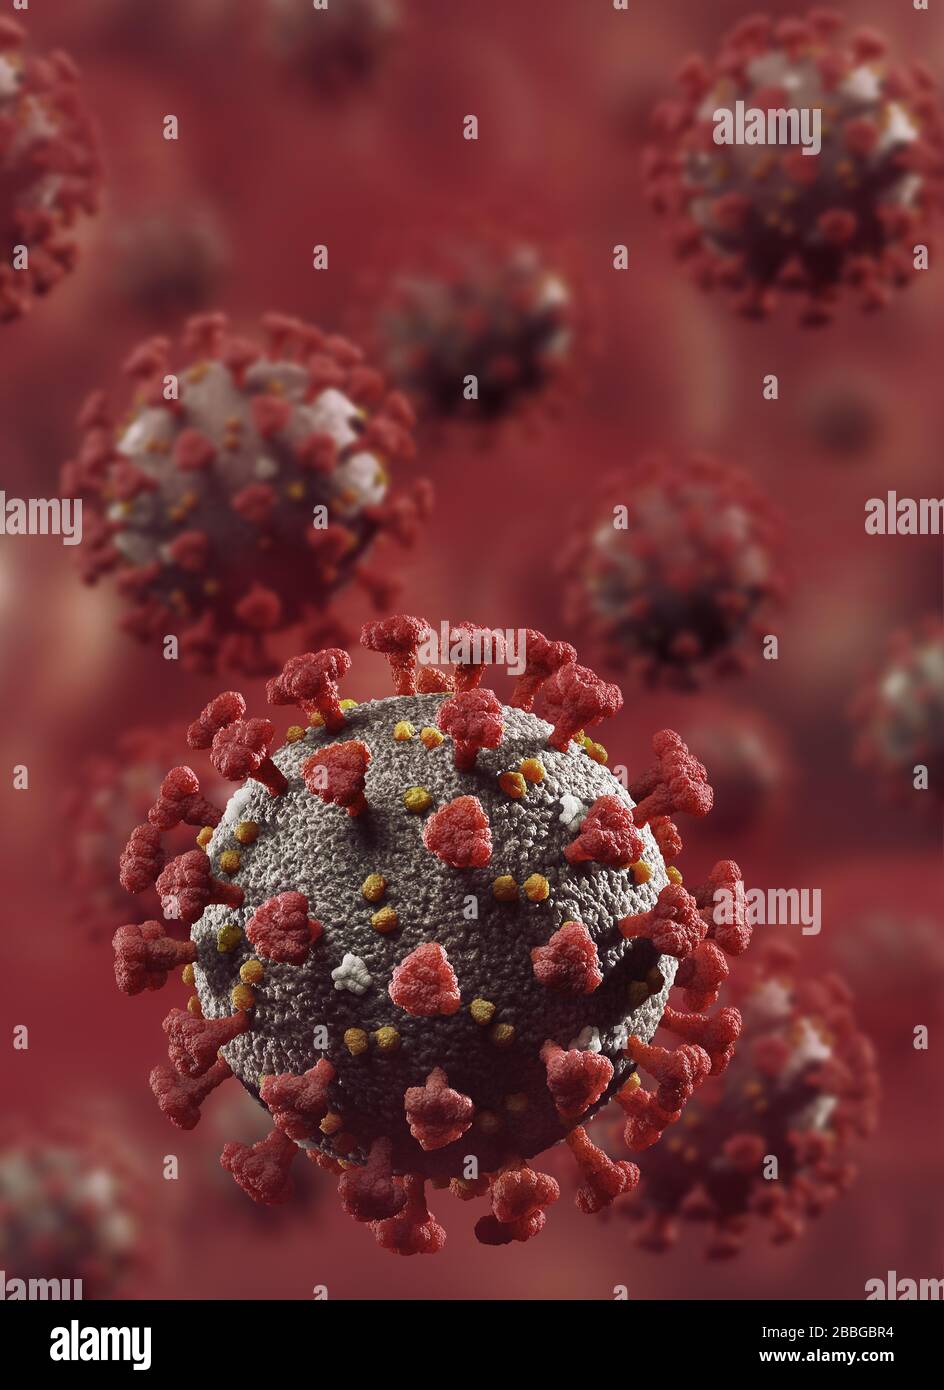 Coronavirus, COVID-19, particules du virus Corona, virions se multipliant dans le flux sanguin rouge. SARS-CoV-2 illustration médicale artistique en couleur. Banque D'Images